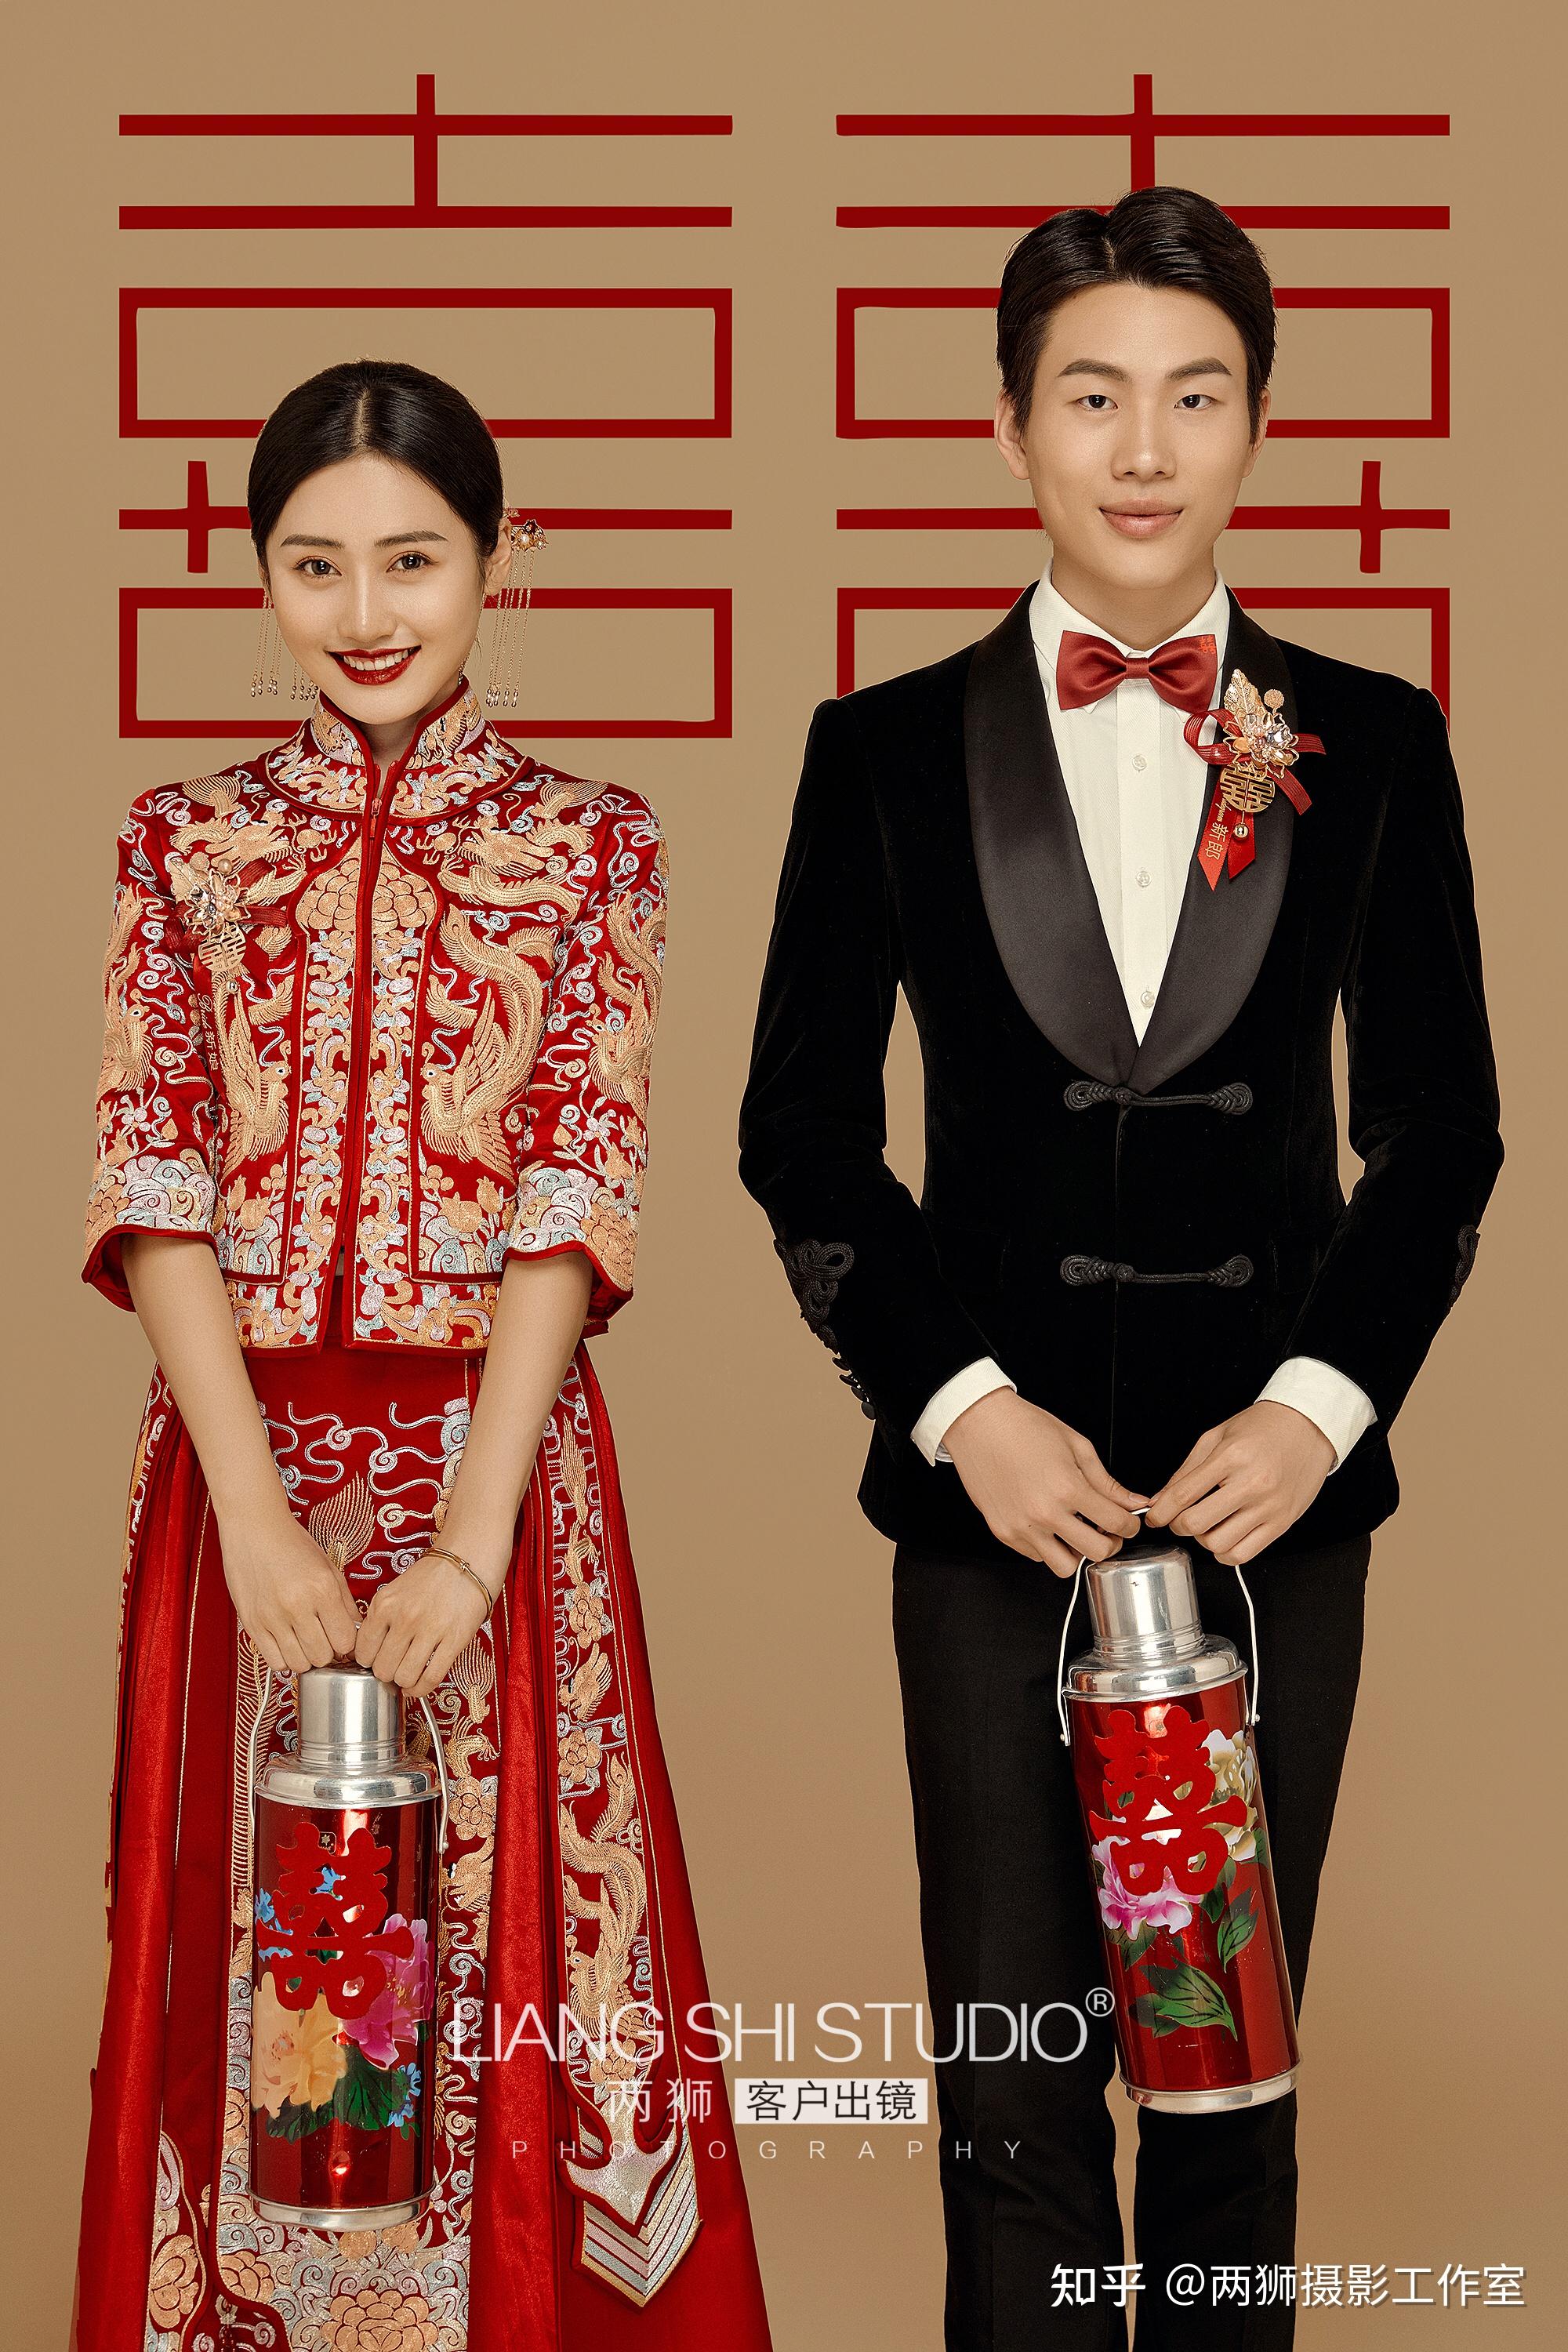 穿着中式嫁衣嫁给爱情浓郁古典气息的秀禾服一组很出片的中式婚纱照